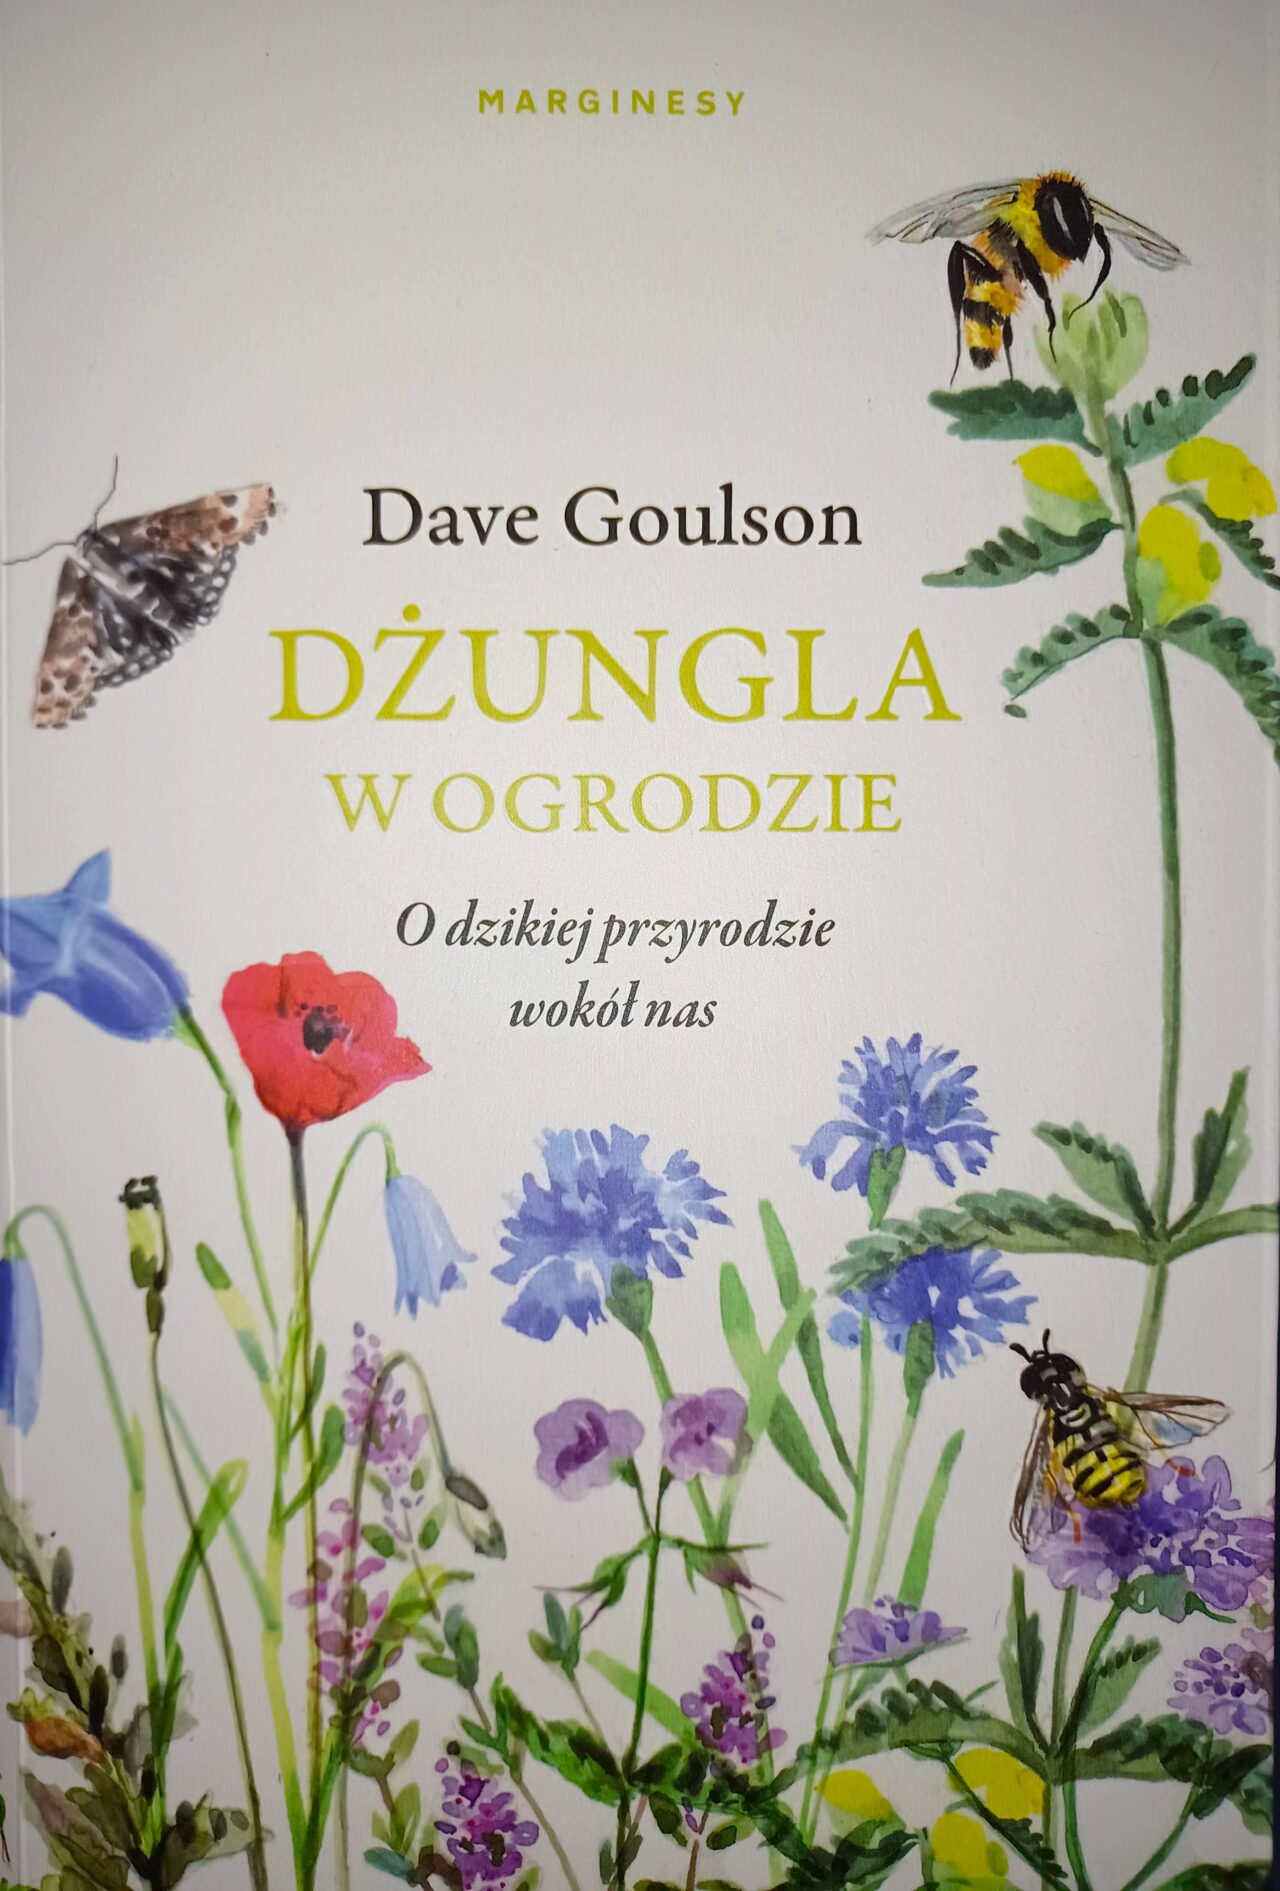 Dave Goulson